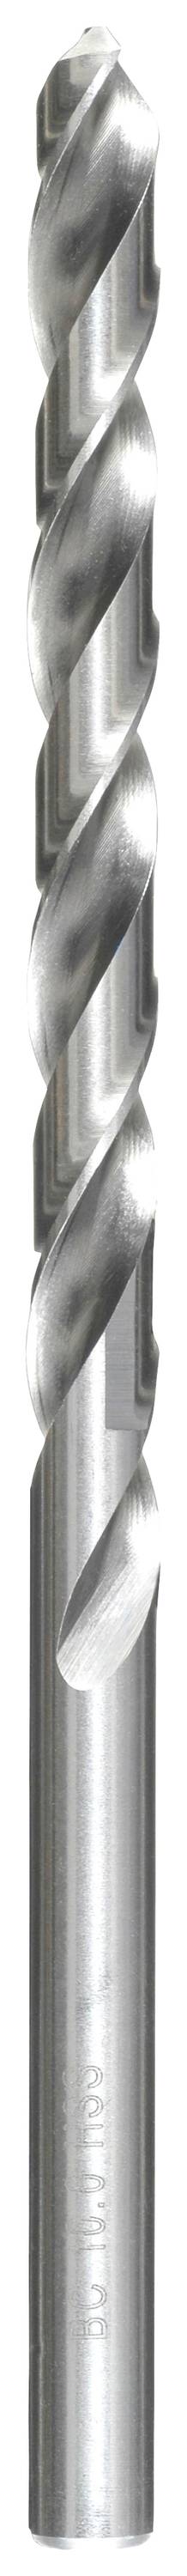 KWB 217060 HSS Spiralbohrer 1 Stück 6 mm Gesamtlänge 139 mm DIN 340 Zahnkranzbohrfutter 1 St.